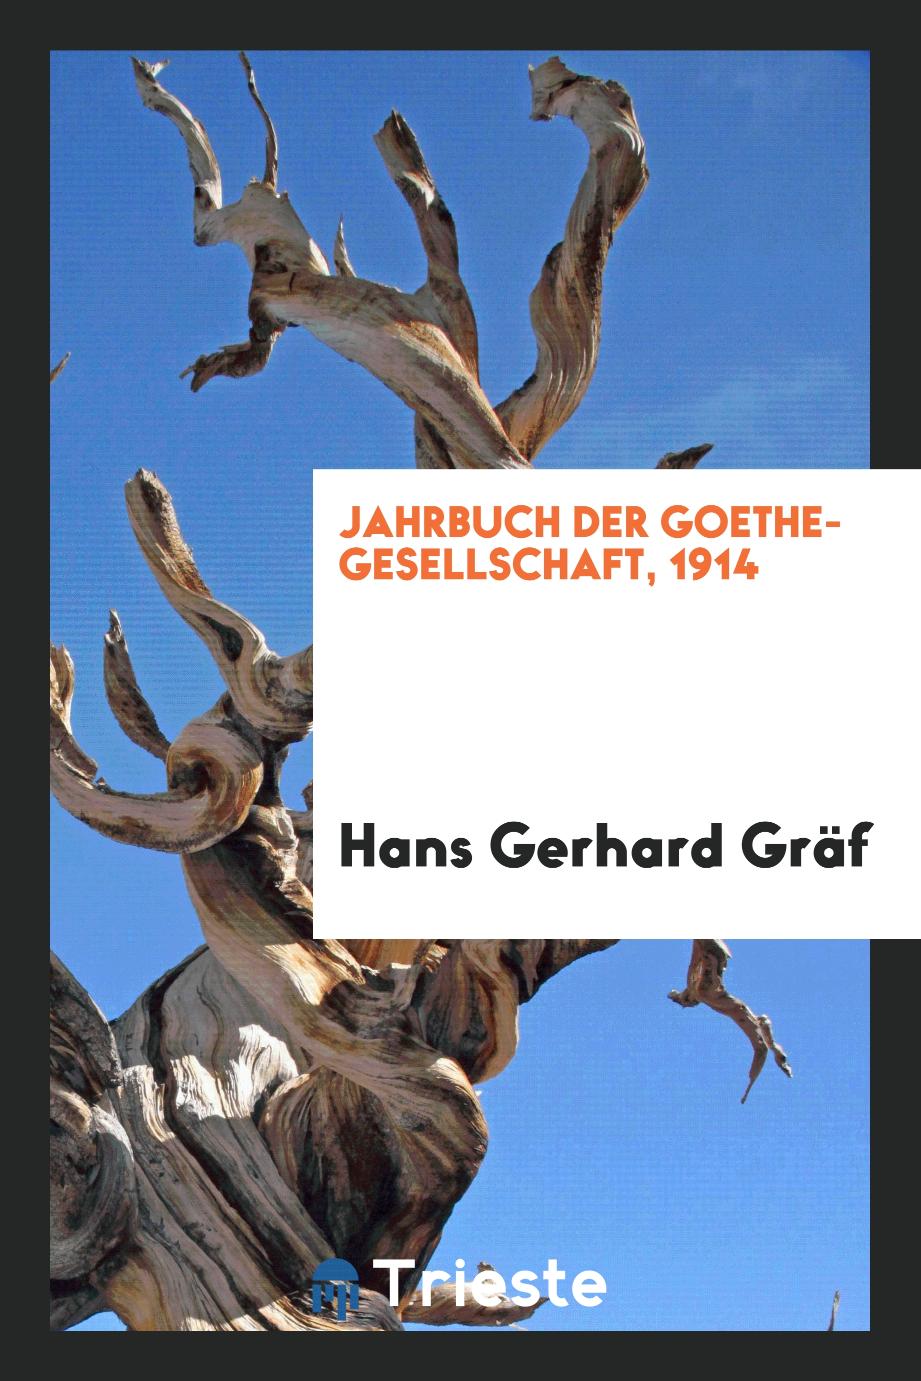 Jahrbuch der Goethe-Gesellschaft, 1914